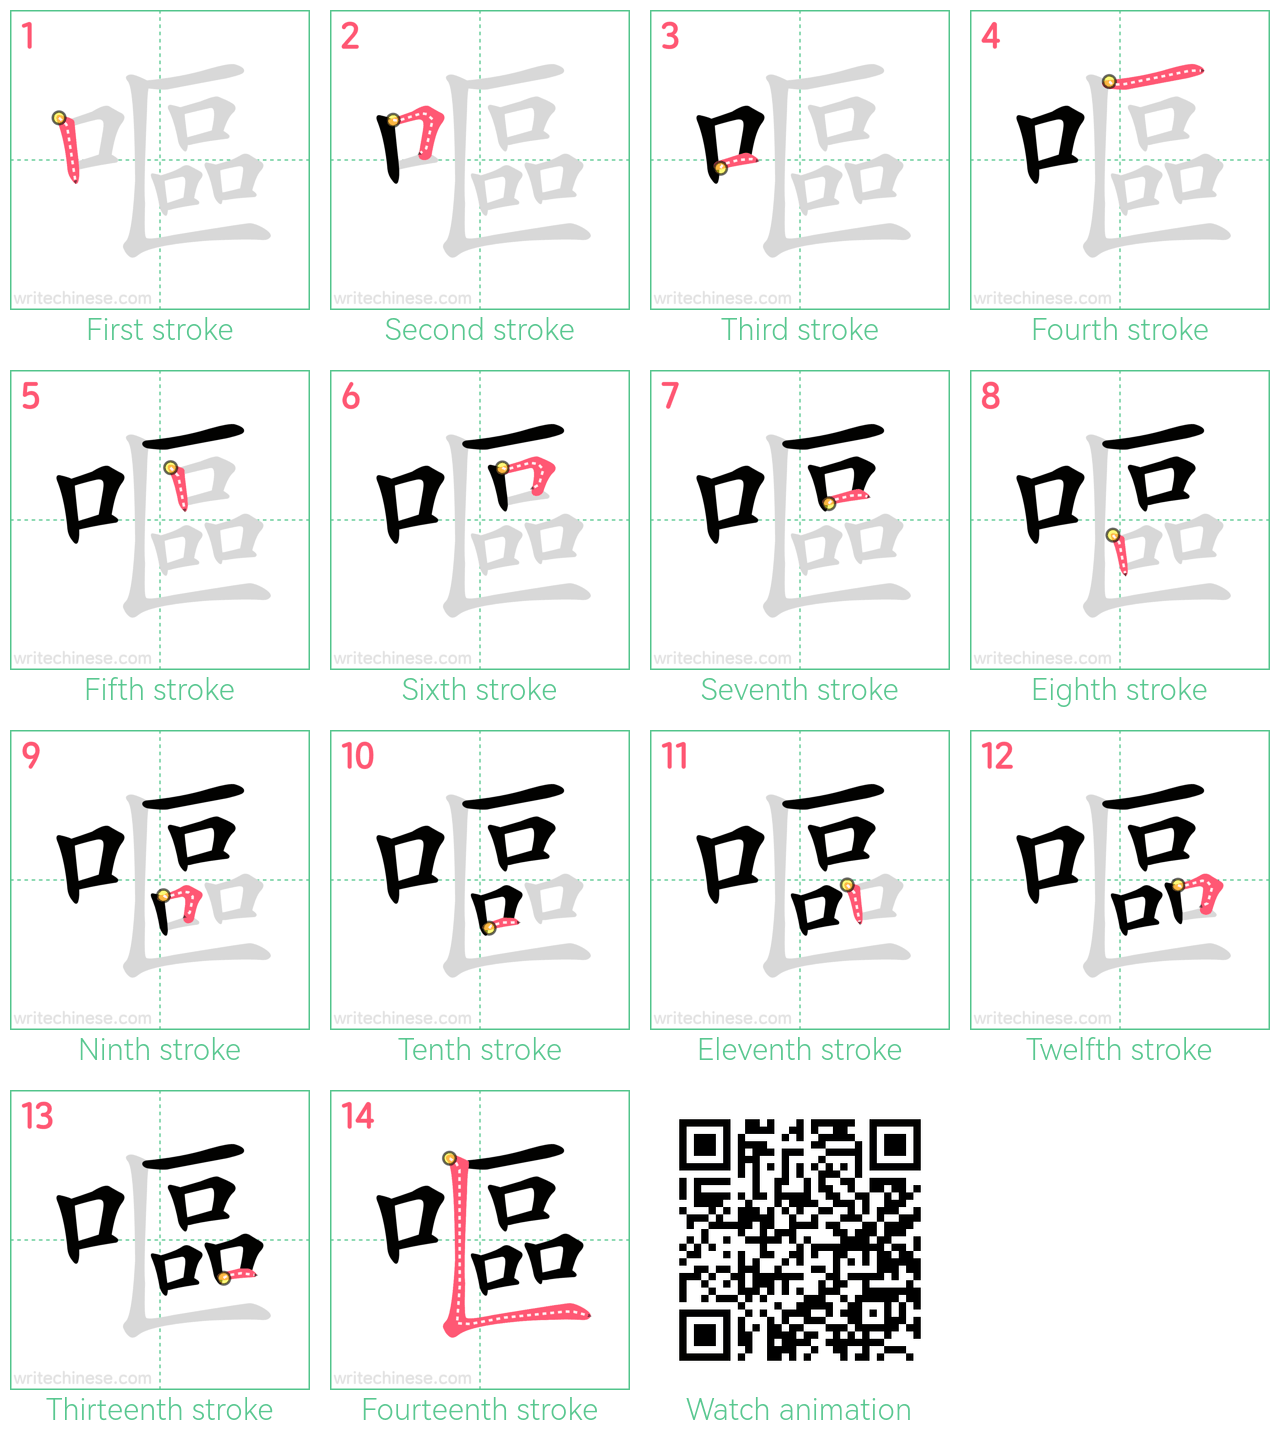 嘔 step-by-step stroke order diagrams